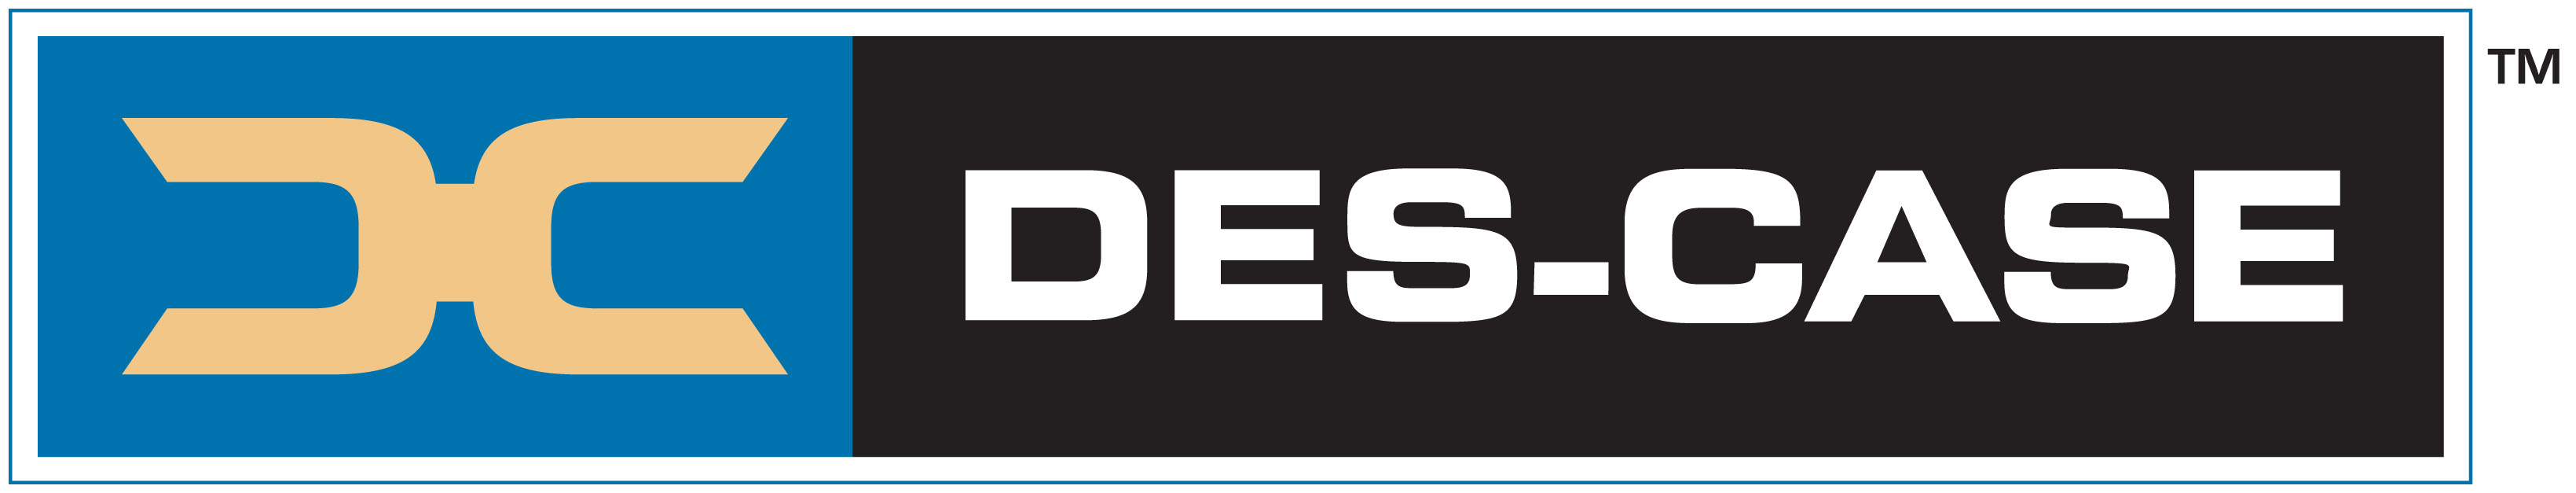 descase_logo